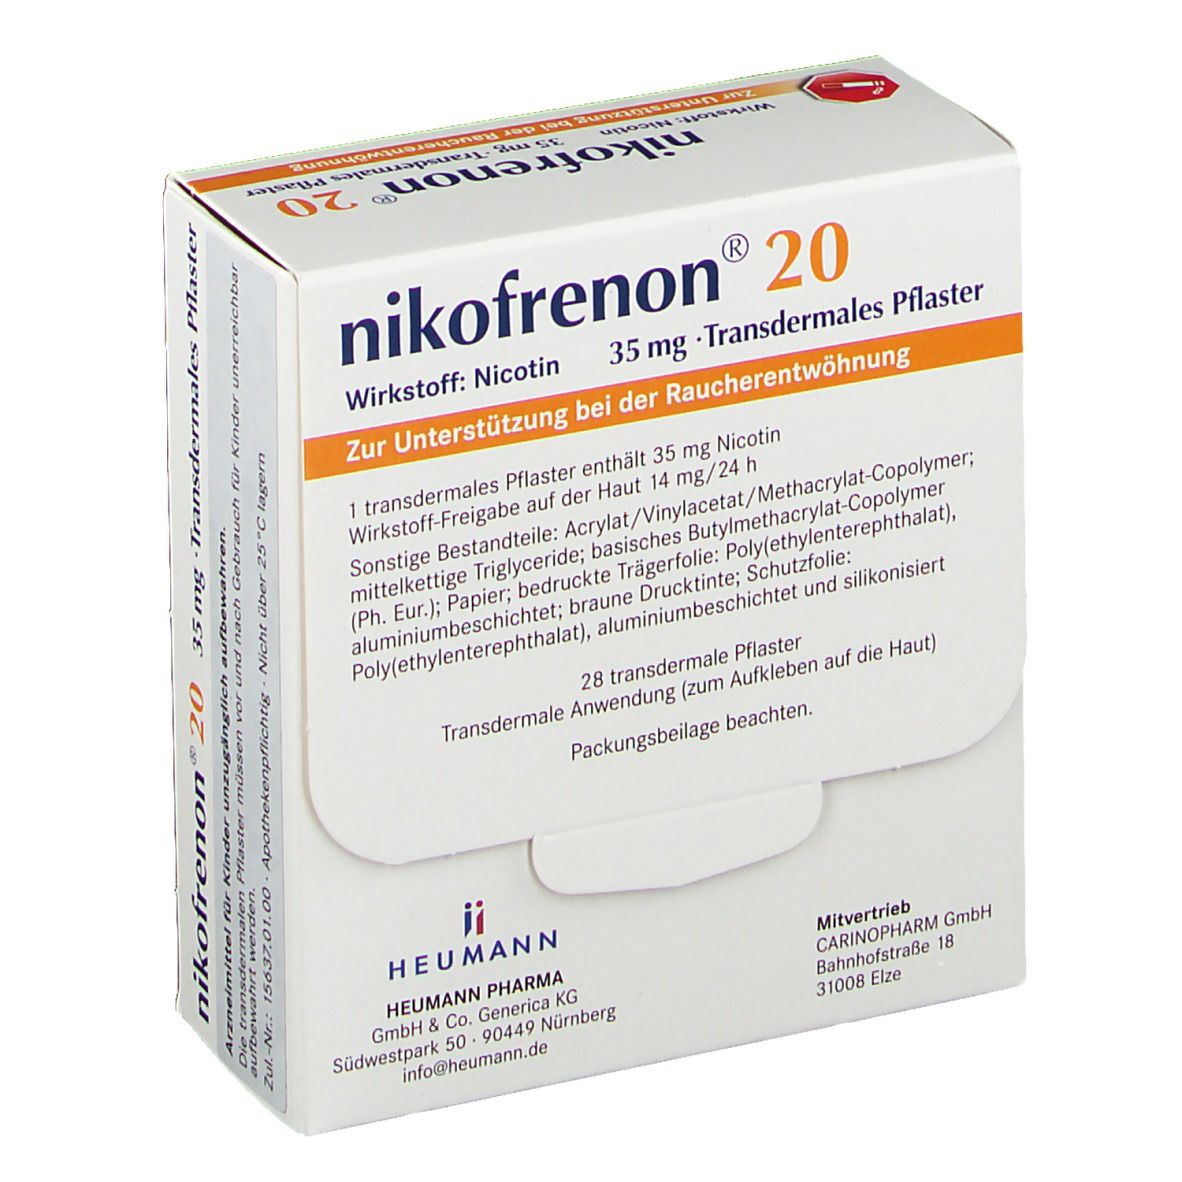 nikofrenon® 20